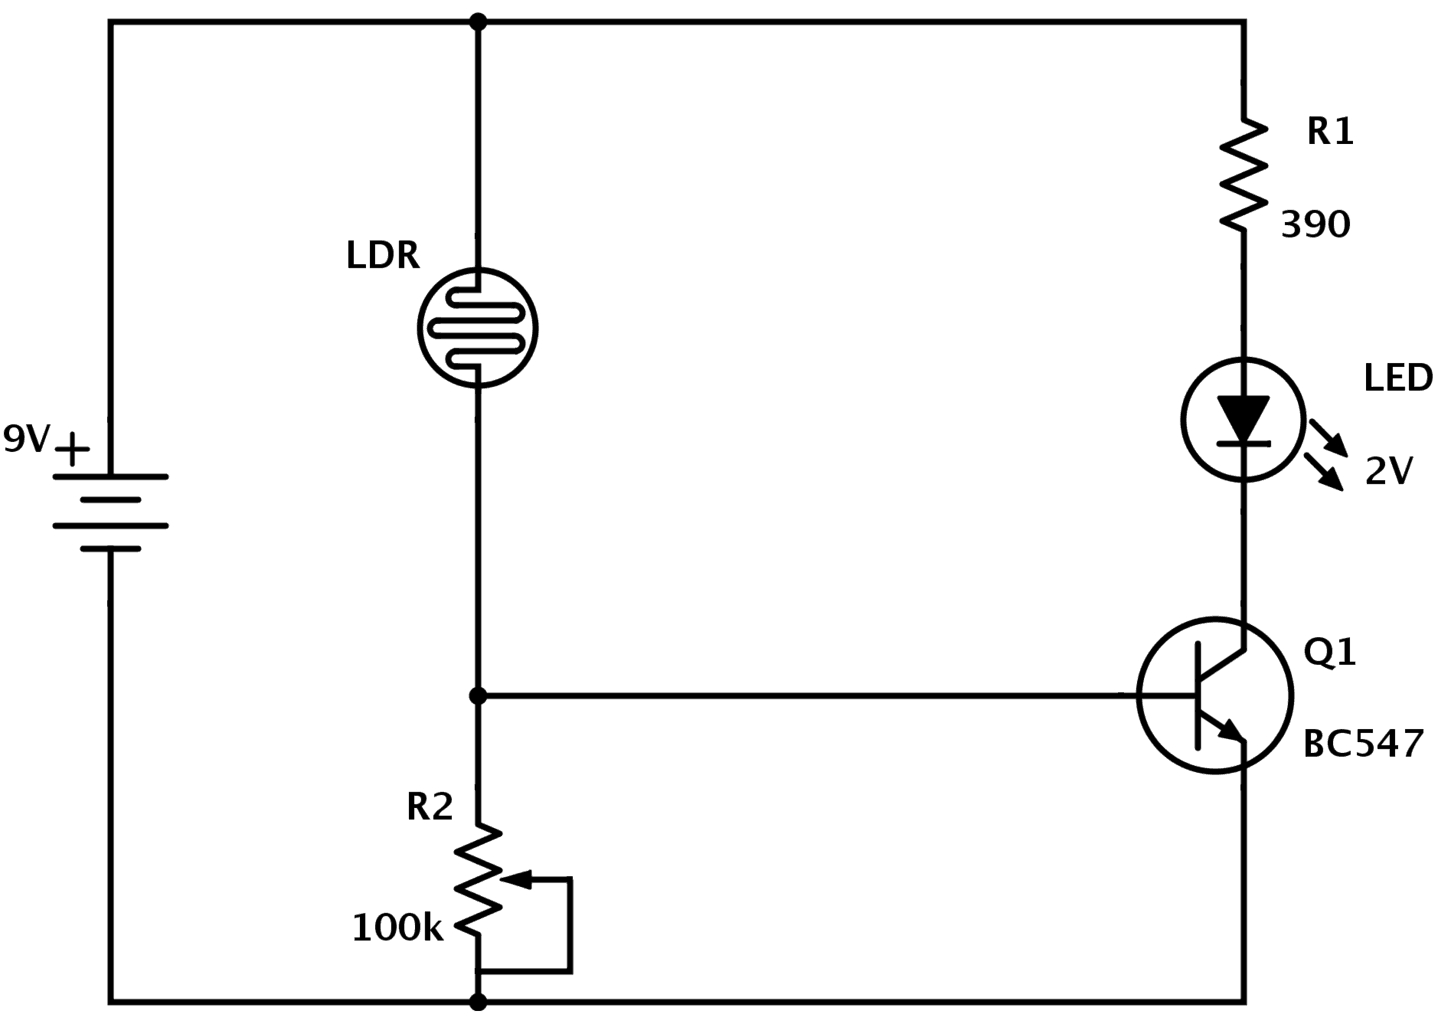 Circuit Diagram Maker Circuit Diagram Draw Wiring Diagram Content